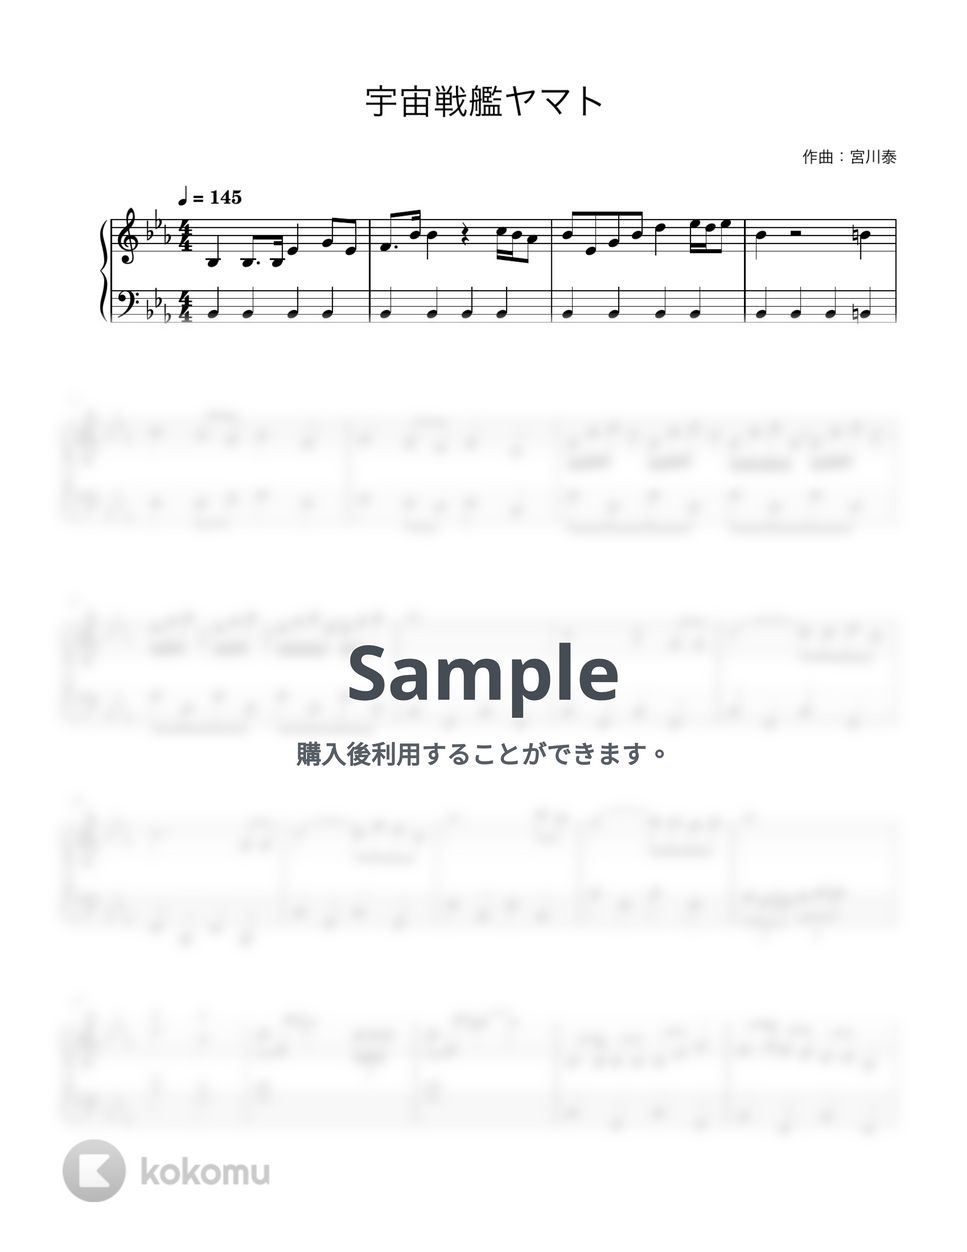 ささきいさお - 宇宙戦艦ヤマト (ピアノ初心者向け) by Piano Lovers. jp